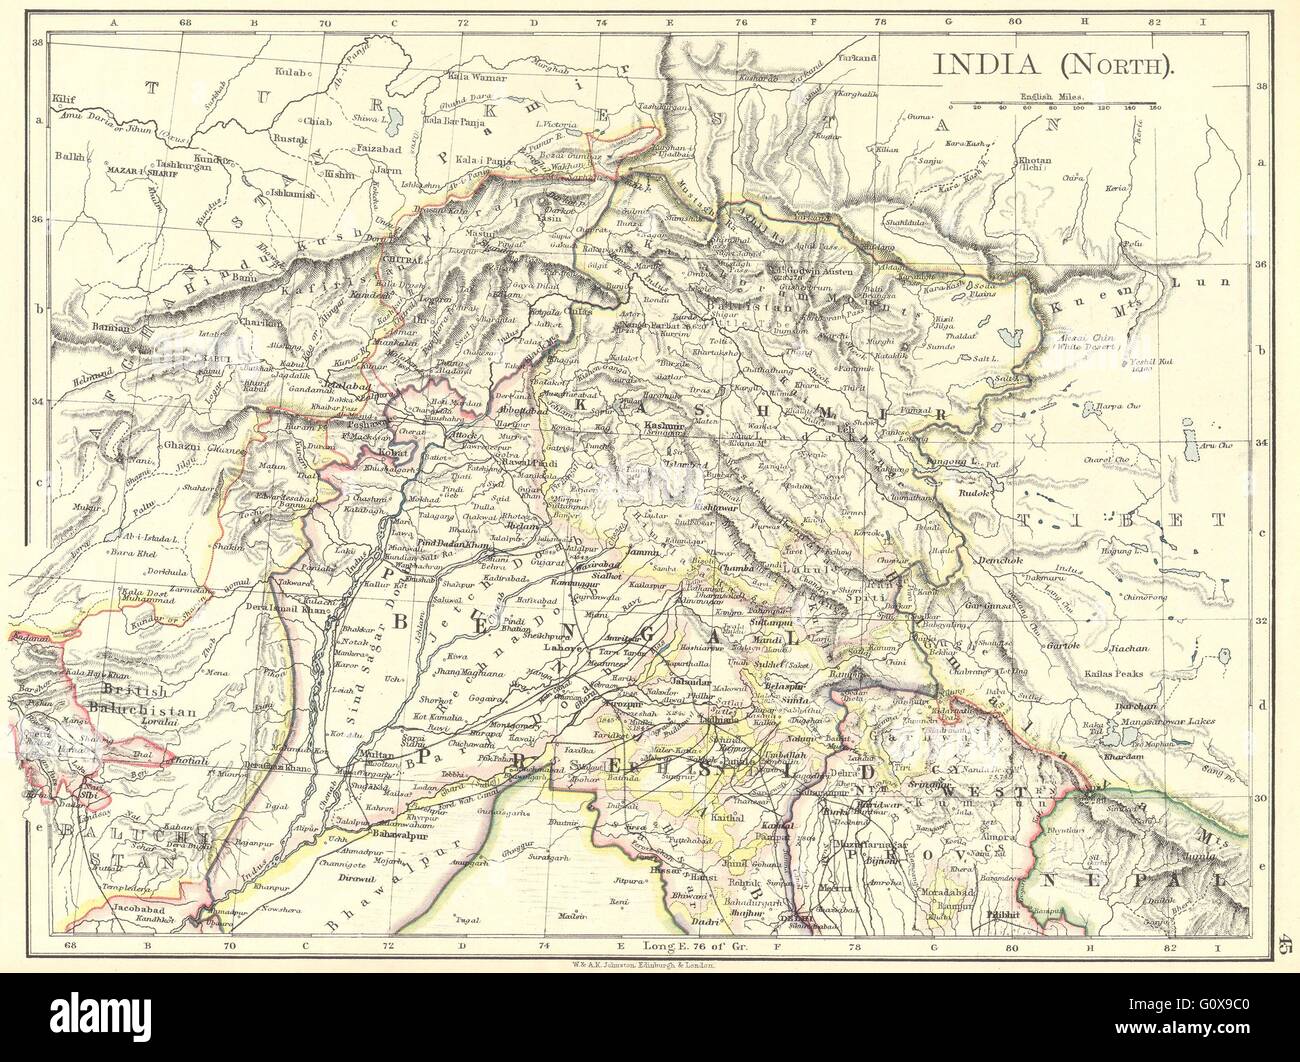 INDIA: India(North), 1897 antique map Stock Photo